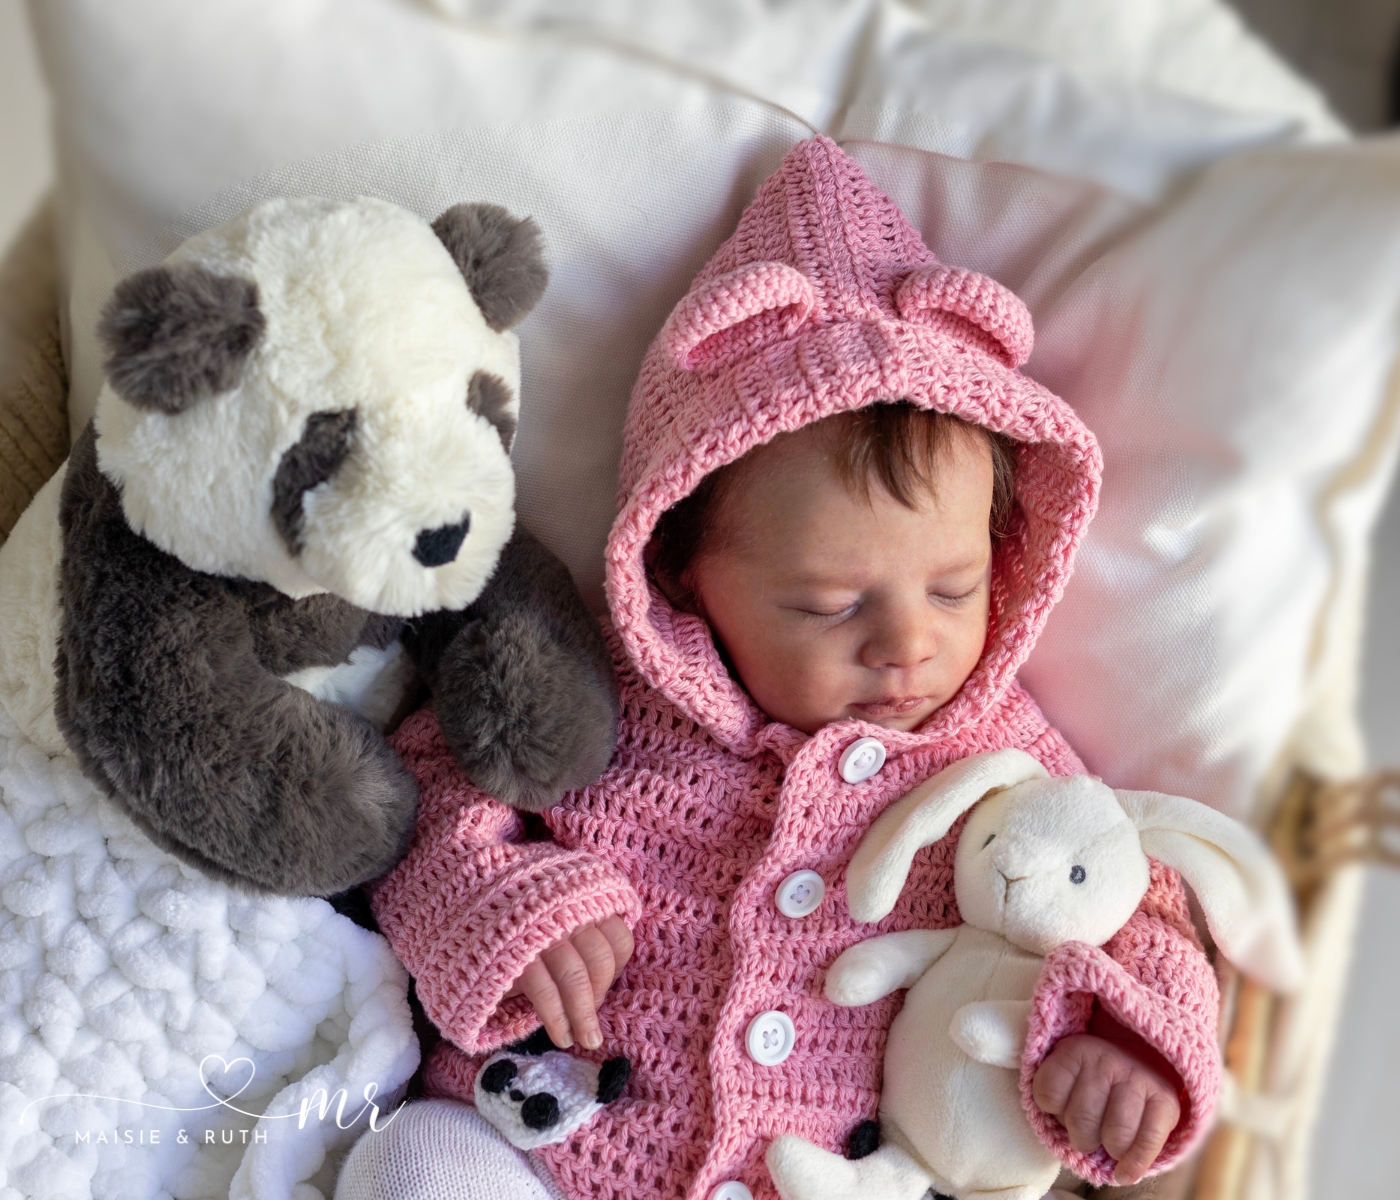 crochet panda baby hoodie free pattern on baby asleep in basket